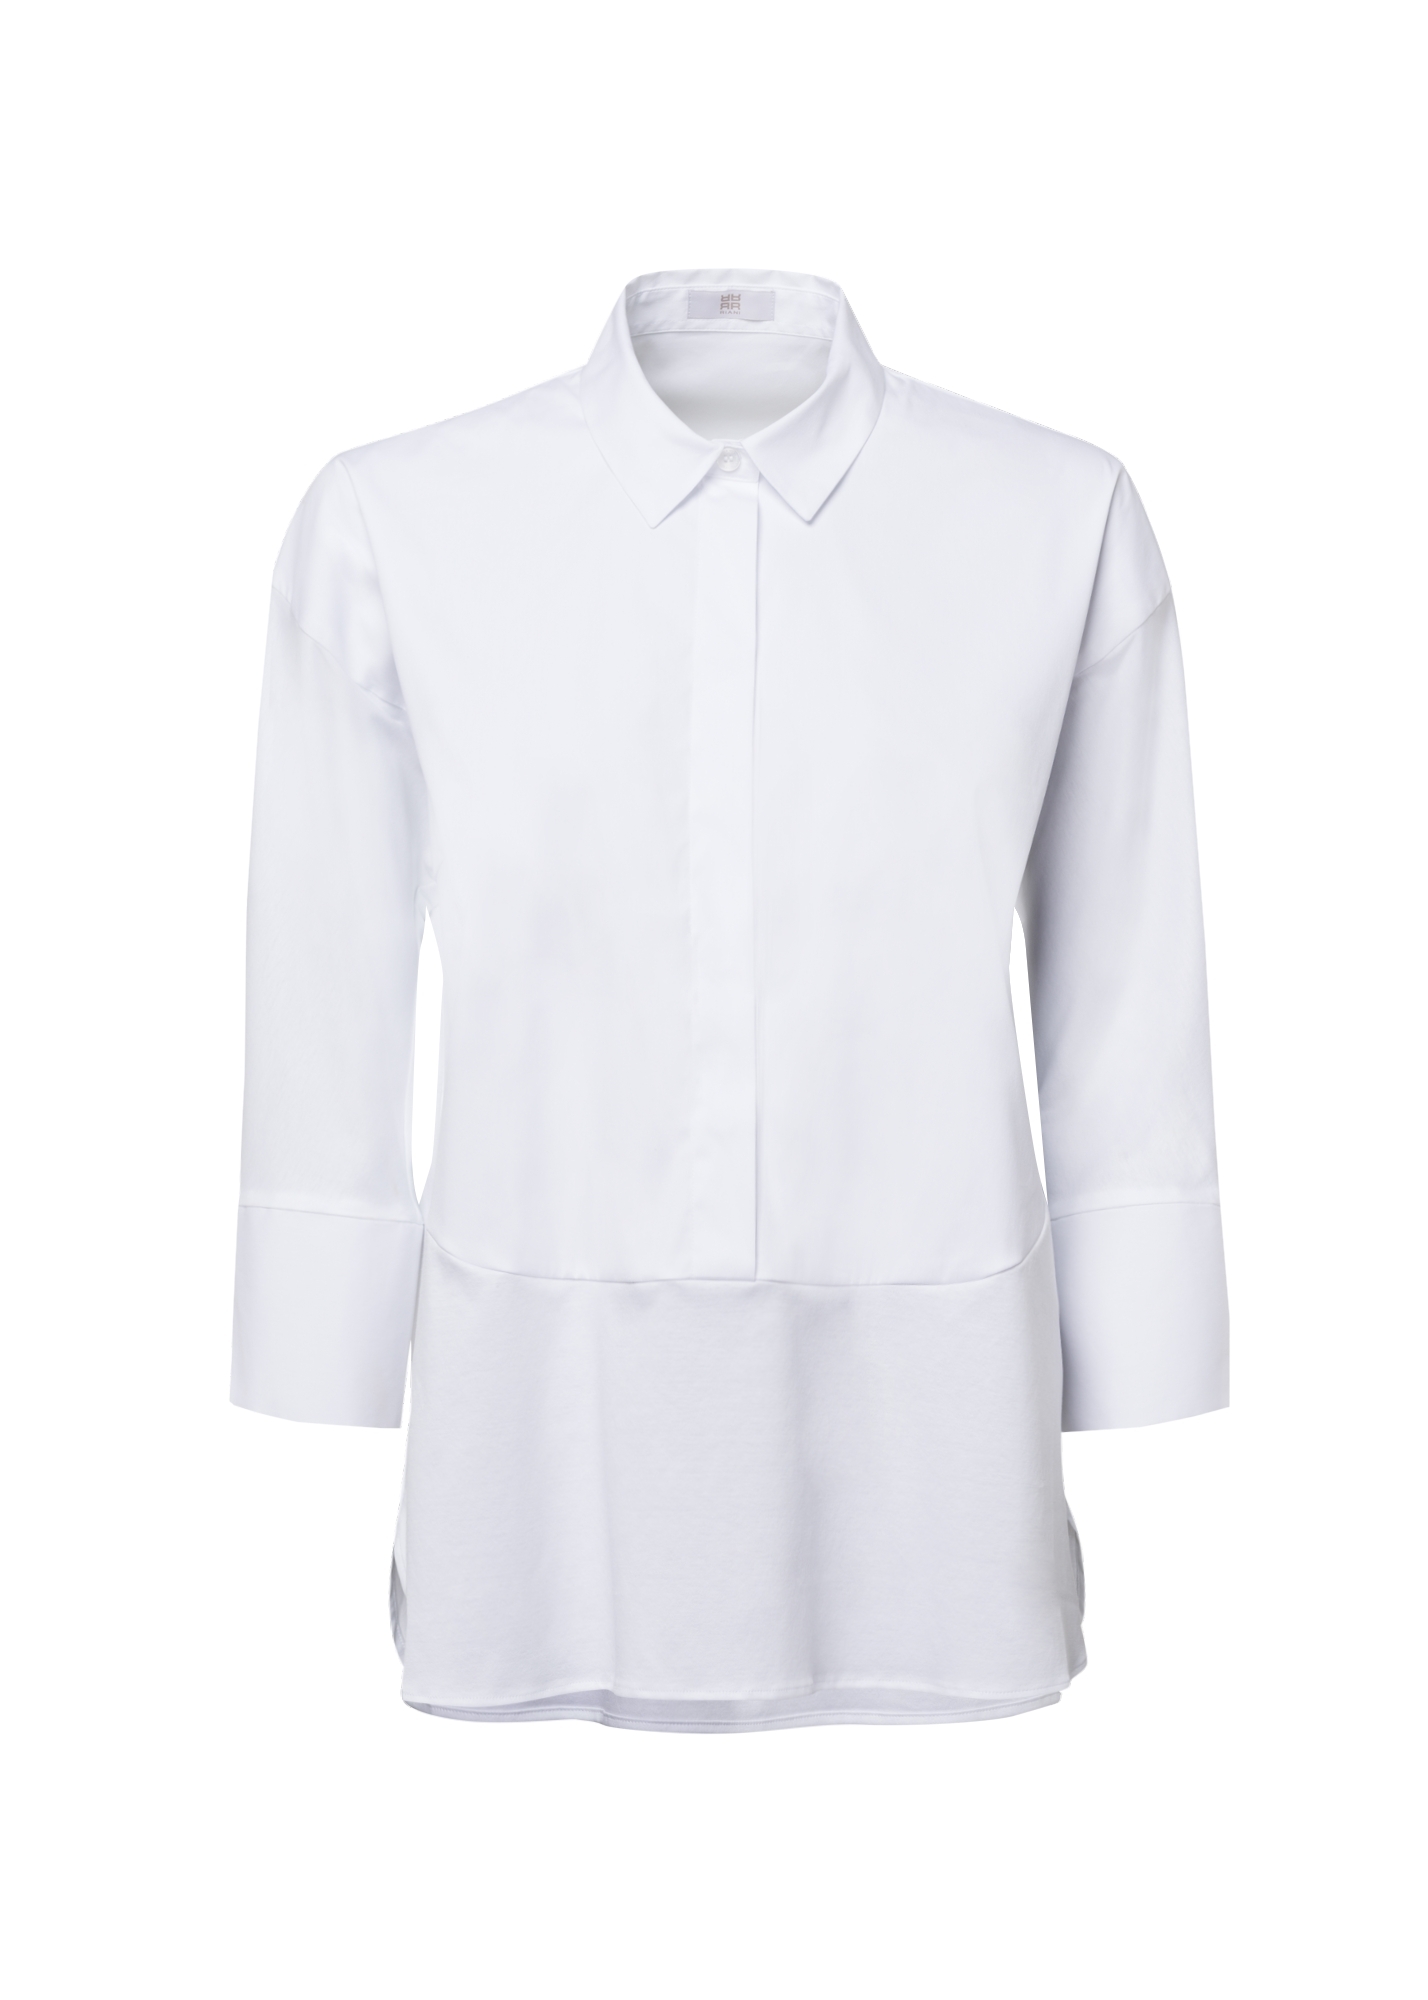 Koszula biała z kołnierzem, zapinana na guziki, rękawy rozszerzane 3/4 Riani 135160-8017-100